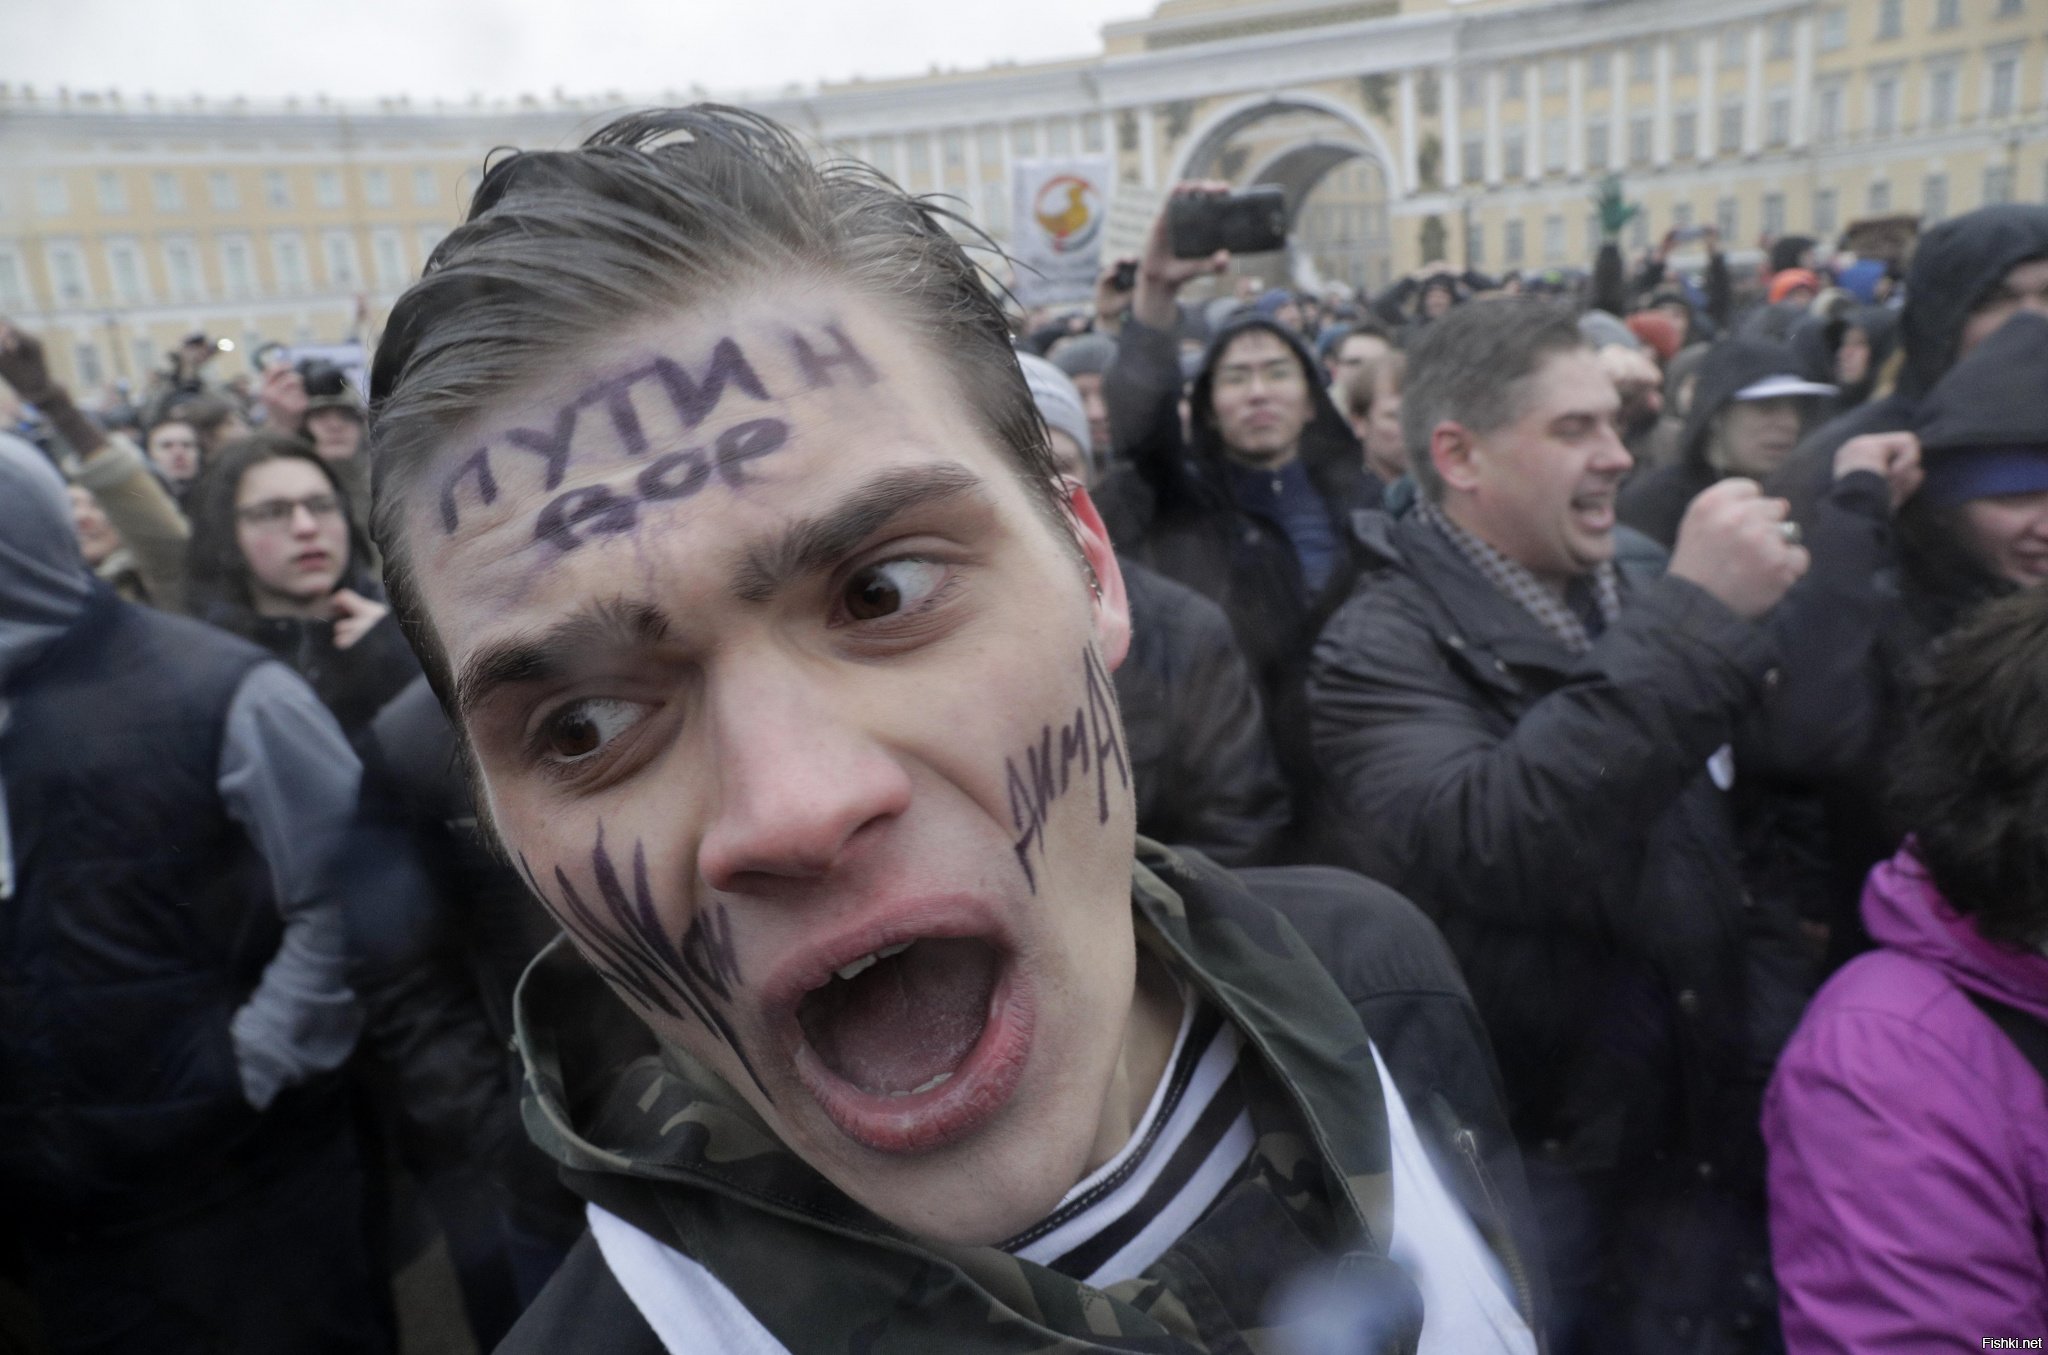 Кричишь мне я придурок. Дебилы на митинге. Фанаты Навального. Навальнята на митинге. Тупые навальнята.